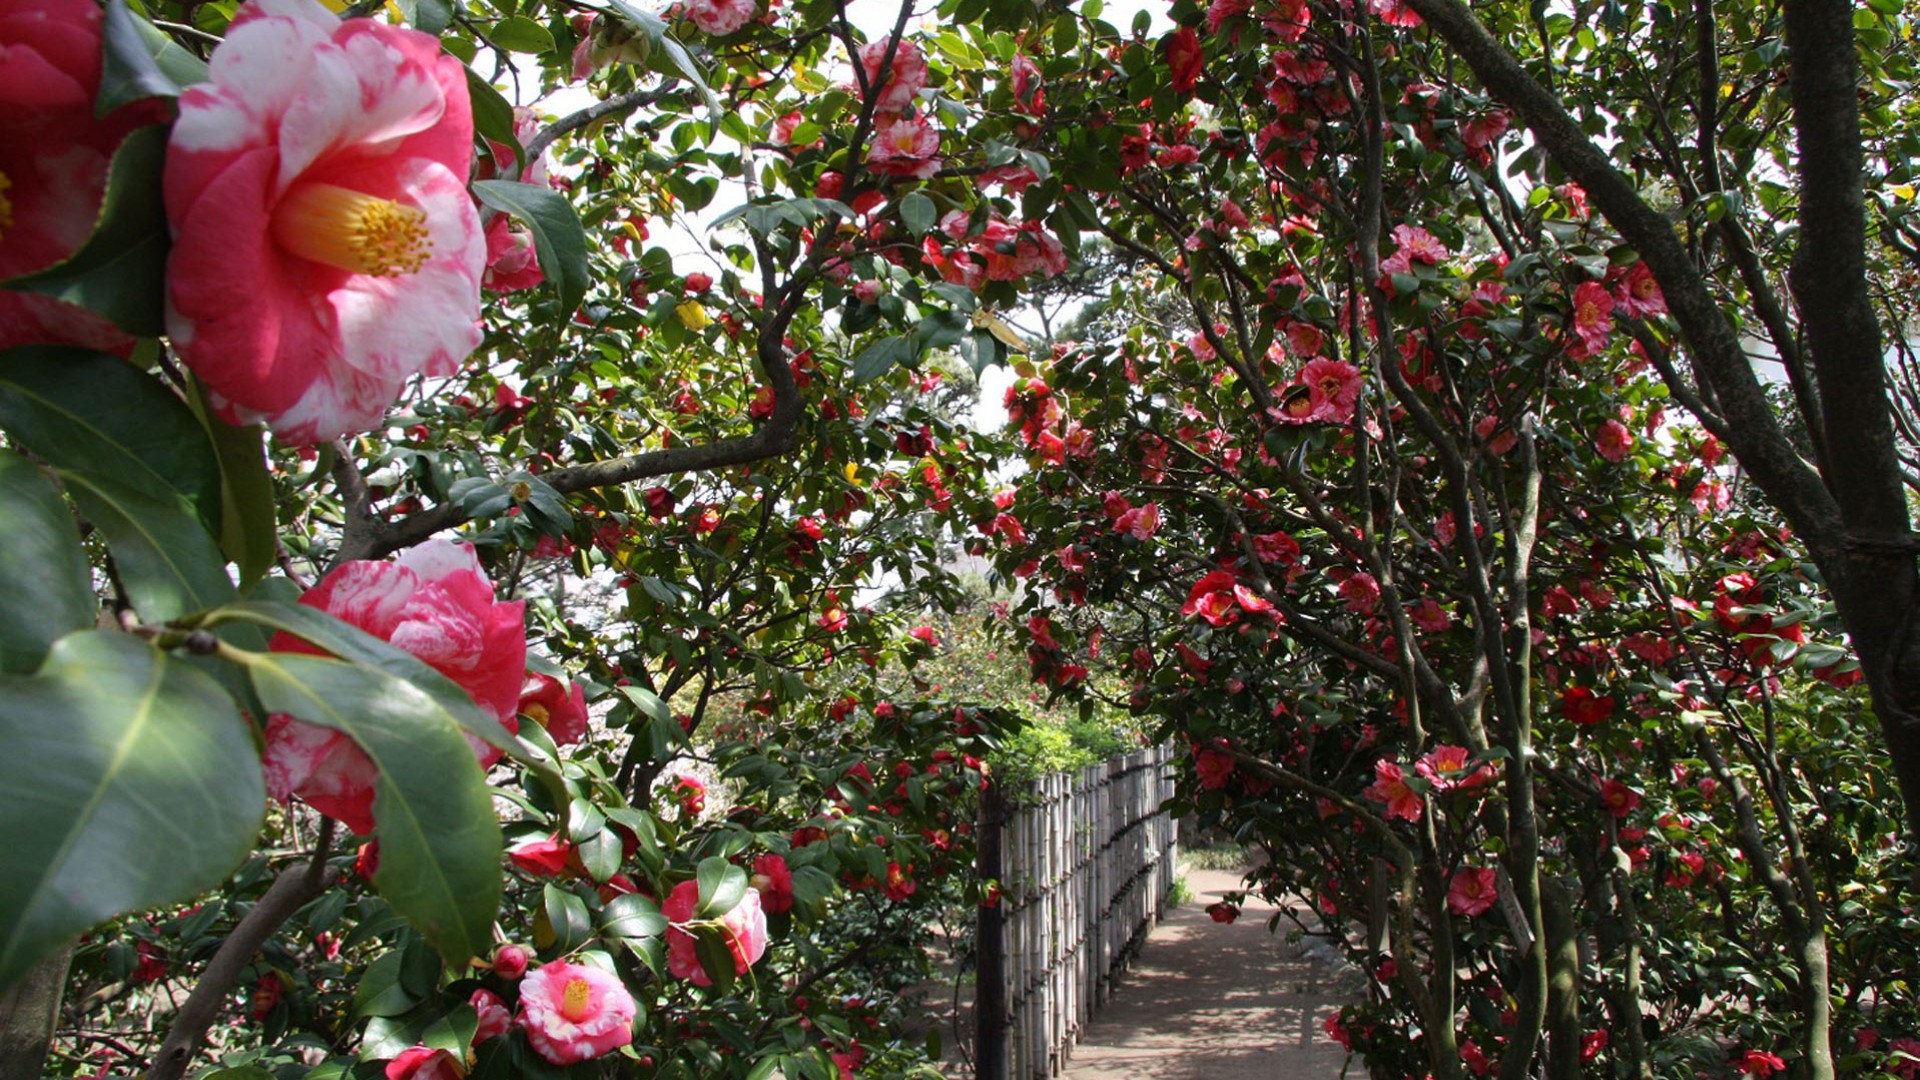 Himuro Camellia Garden